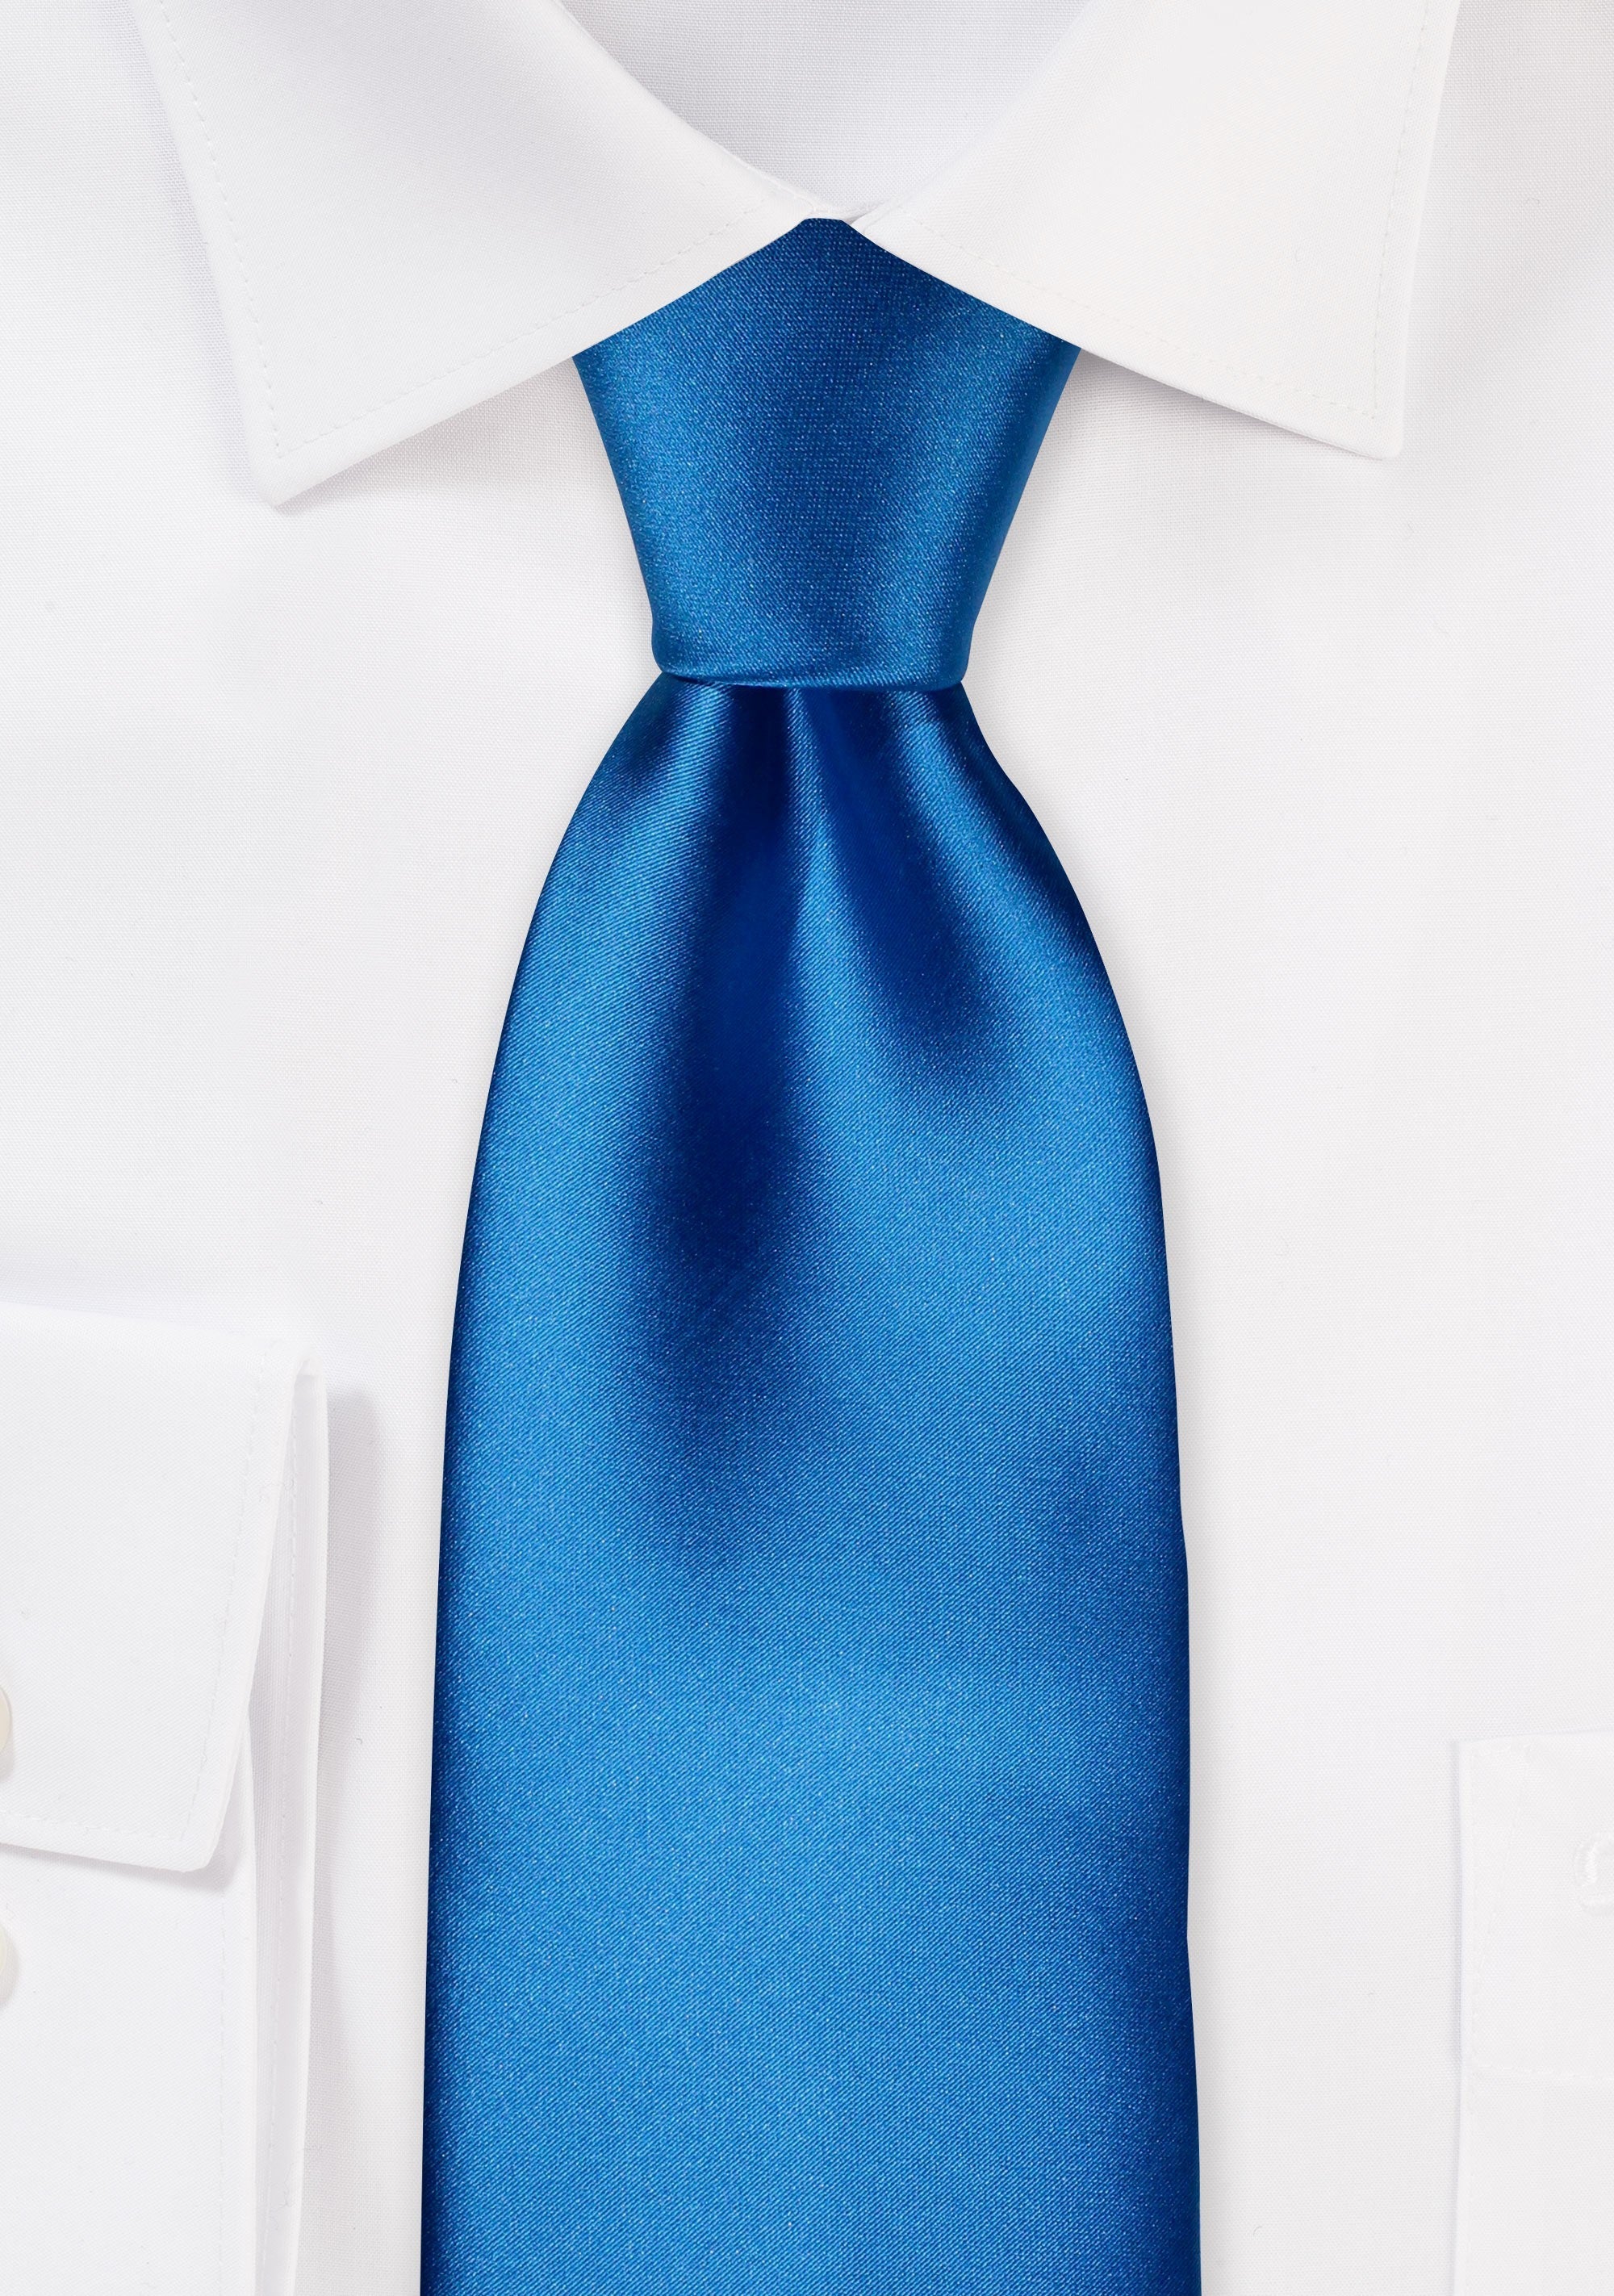 Dodger Blue Solid Necktie